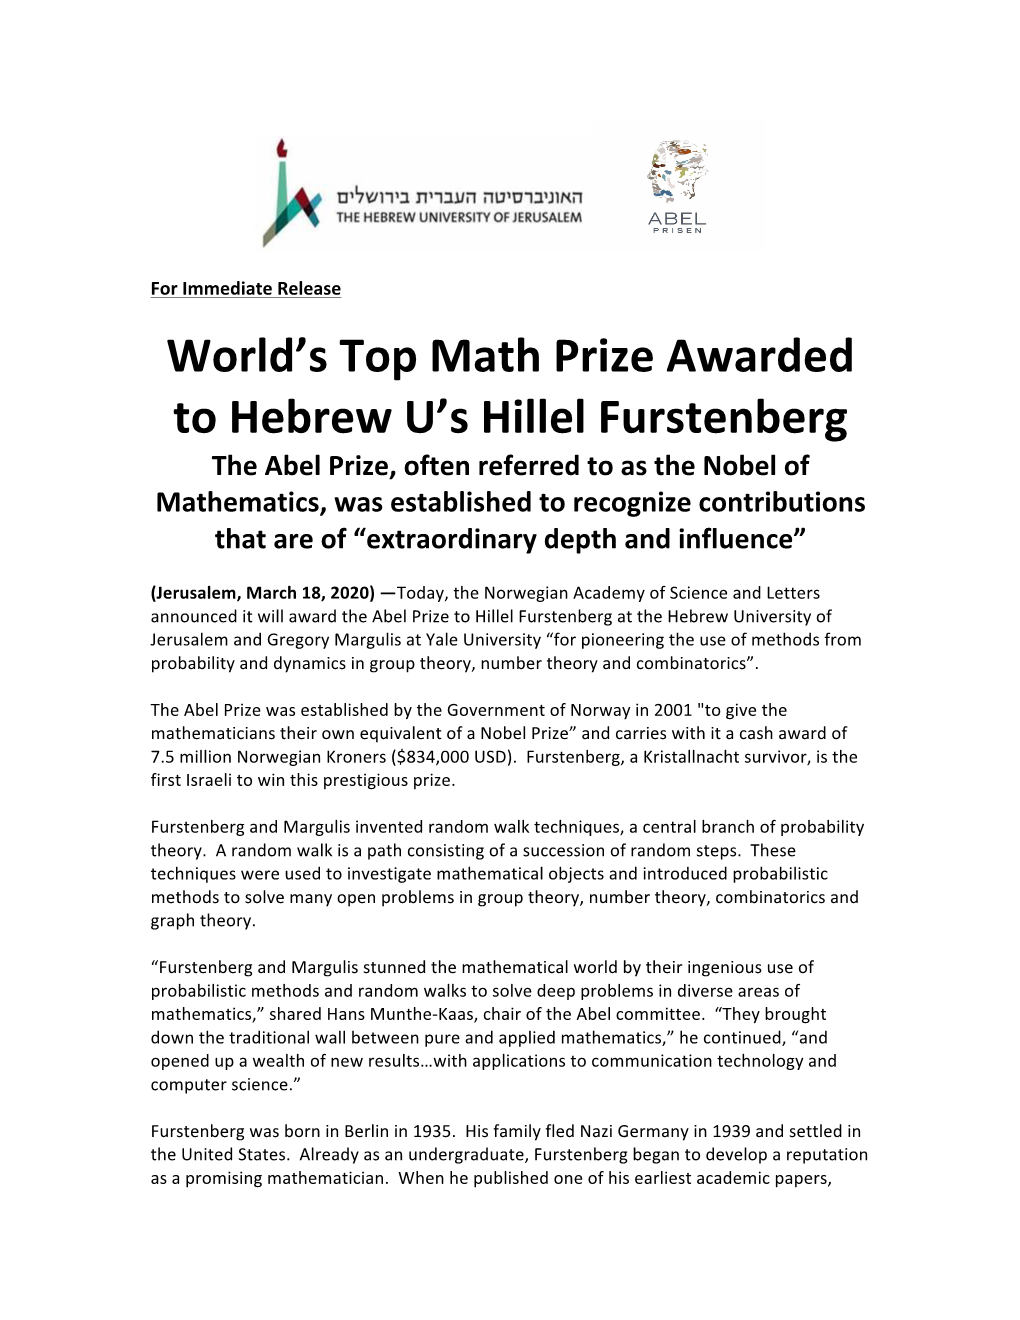 World's Top Math Prize Awarded to Hebrew U's Hillel Furstenberg